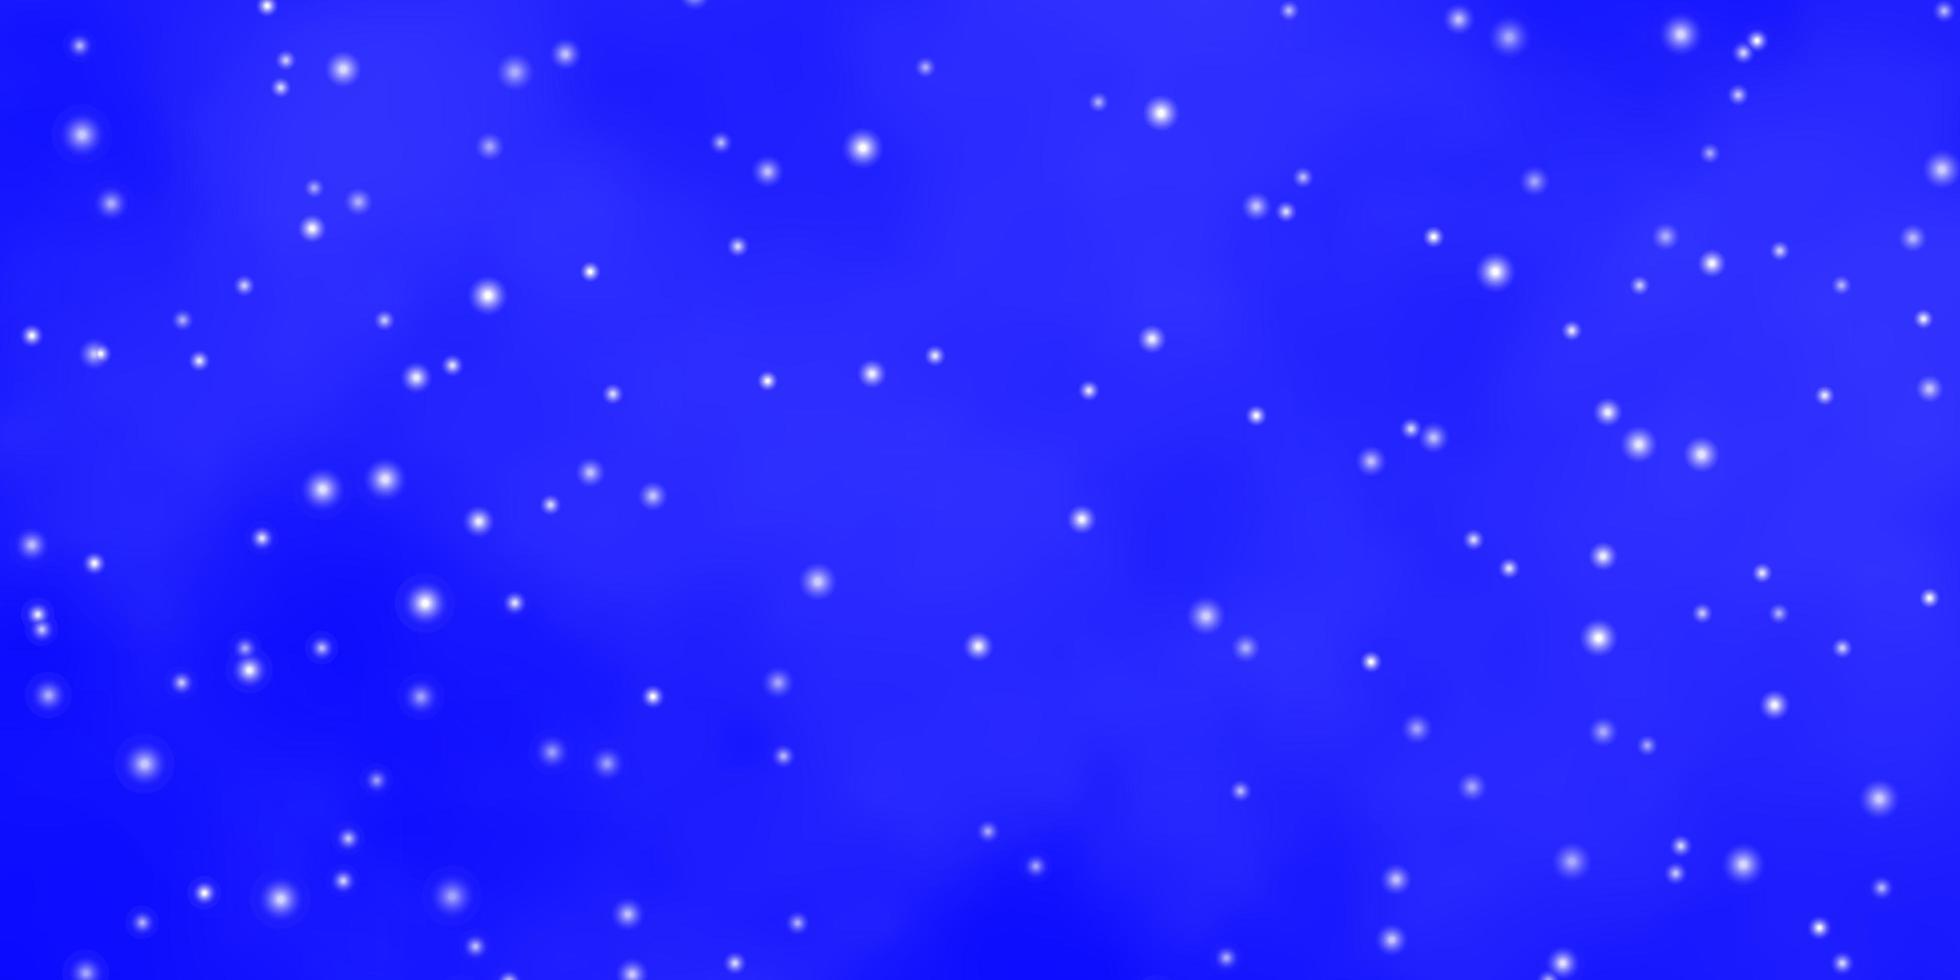 modelo de vetor azul claro com estrelas de néon ilustração decorativa com estrelas no padrão de modelo abstrato para embrulhar presentes